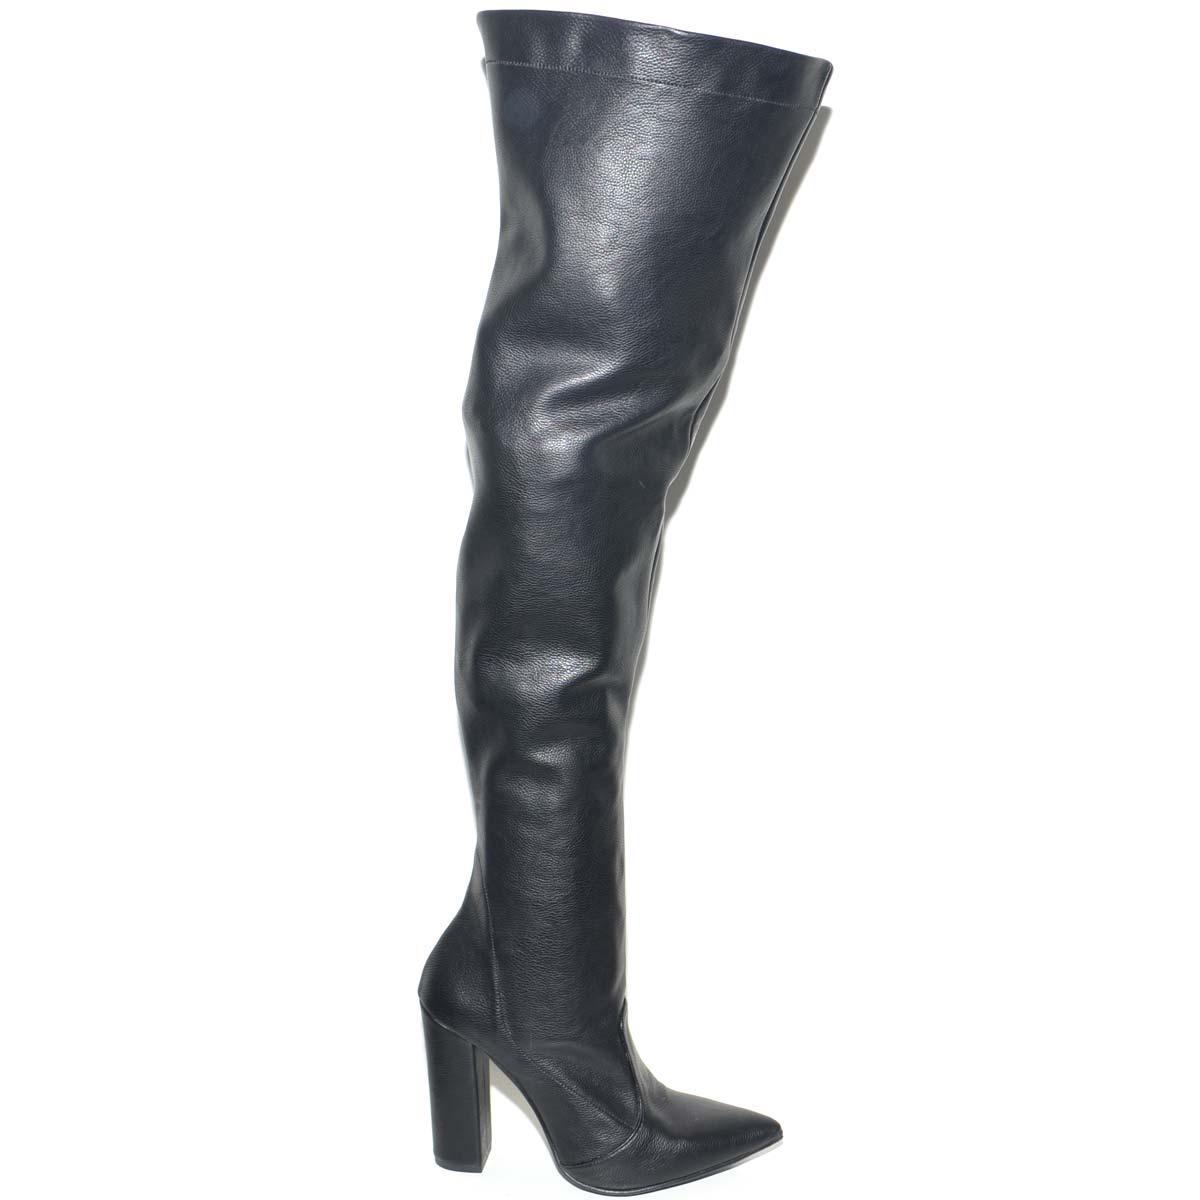 Stivali donna in pelle nero alti sopra il ginocchio a punta lacco largo  moda tendenza made in italy donna stivali Made in italy | MaluShoes